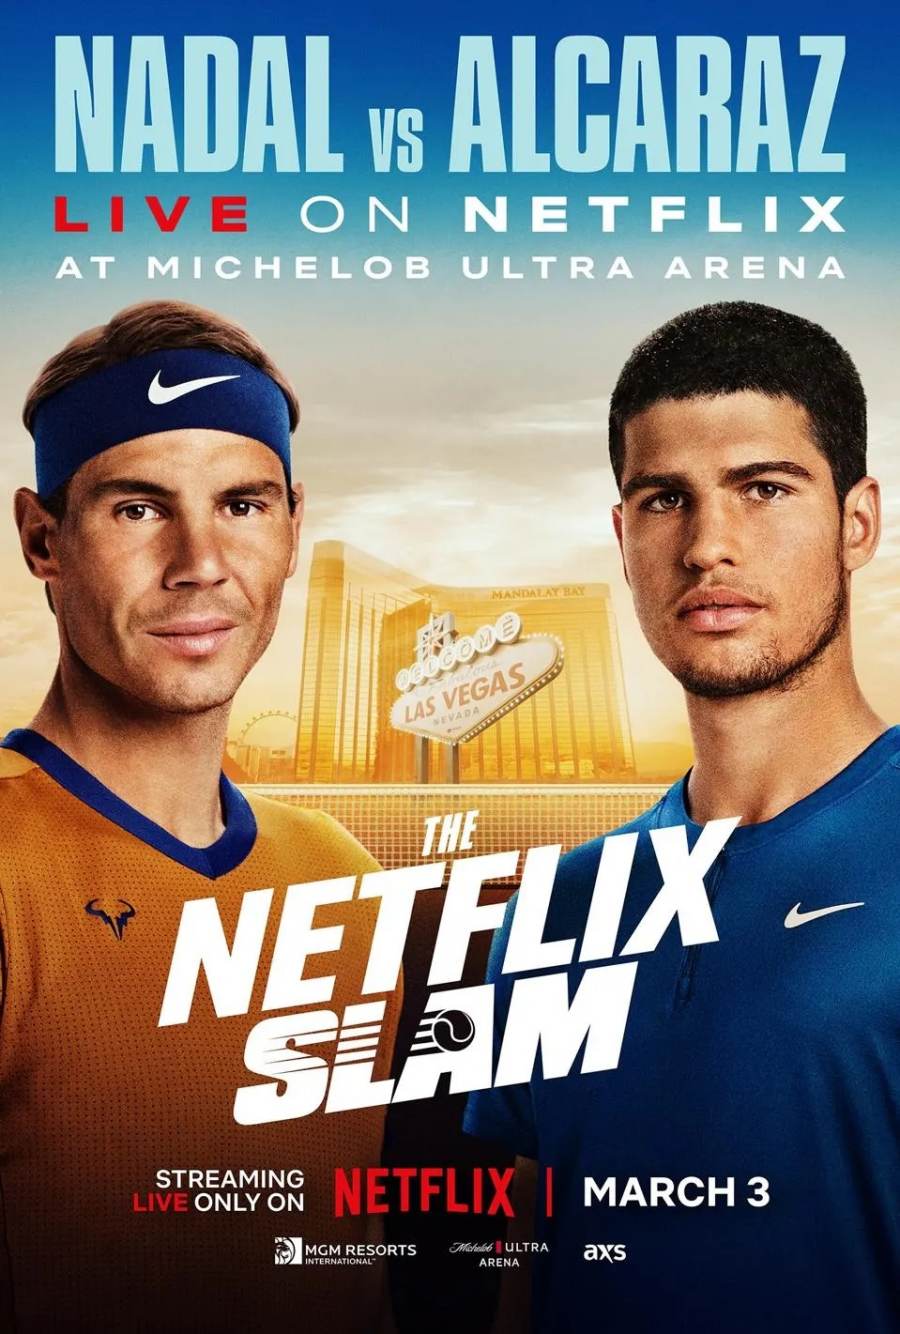 Poster của sự kiện vào tháng 3 năm sau giữa Nadal và Alcaraz. Ảnh: Netflix